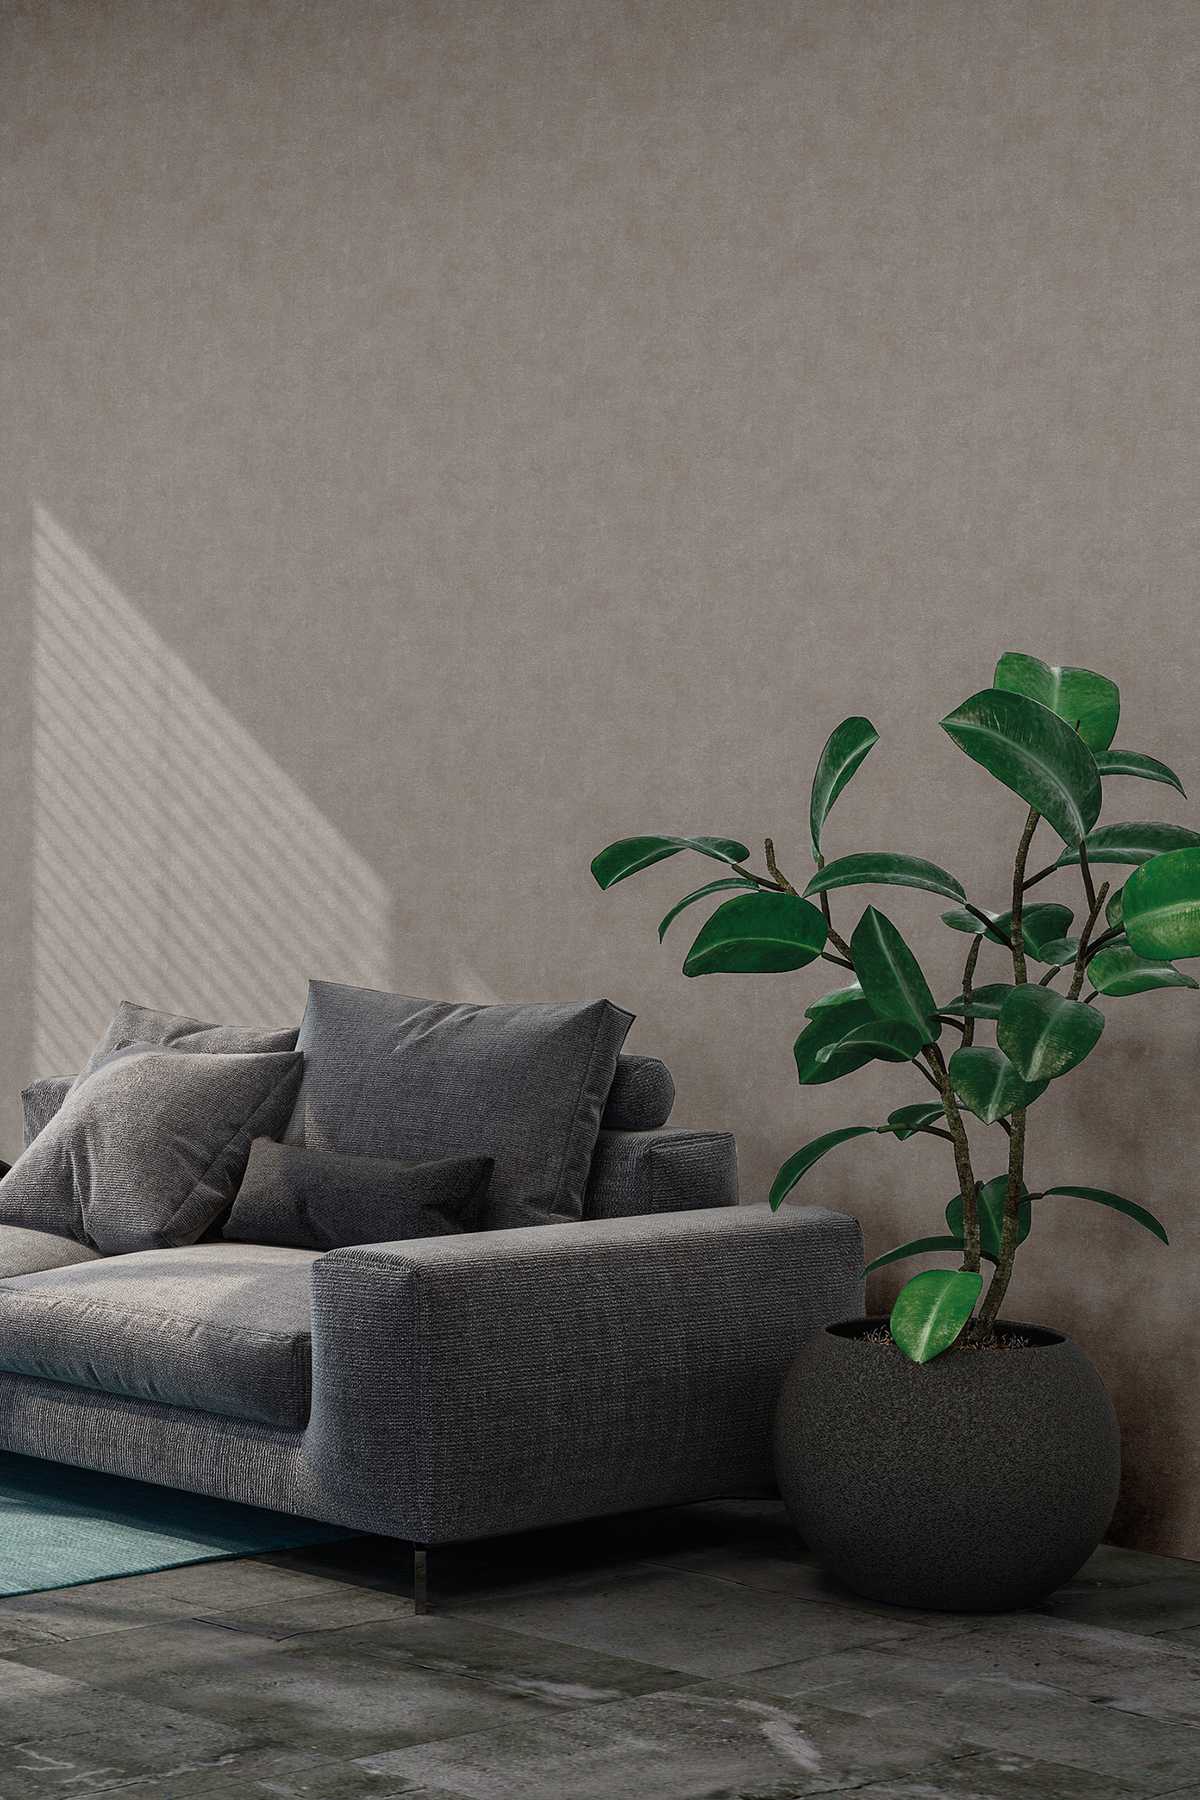             Vliesbehang grijs zijdemat structuurdesign in steenlook
        